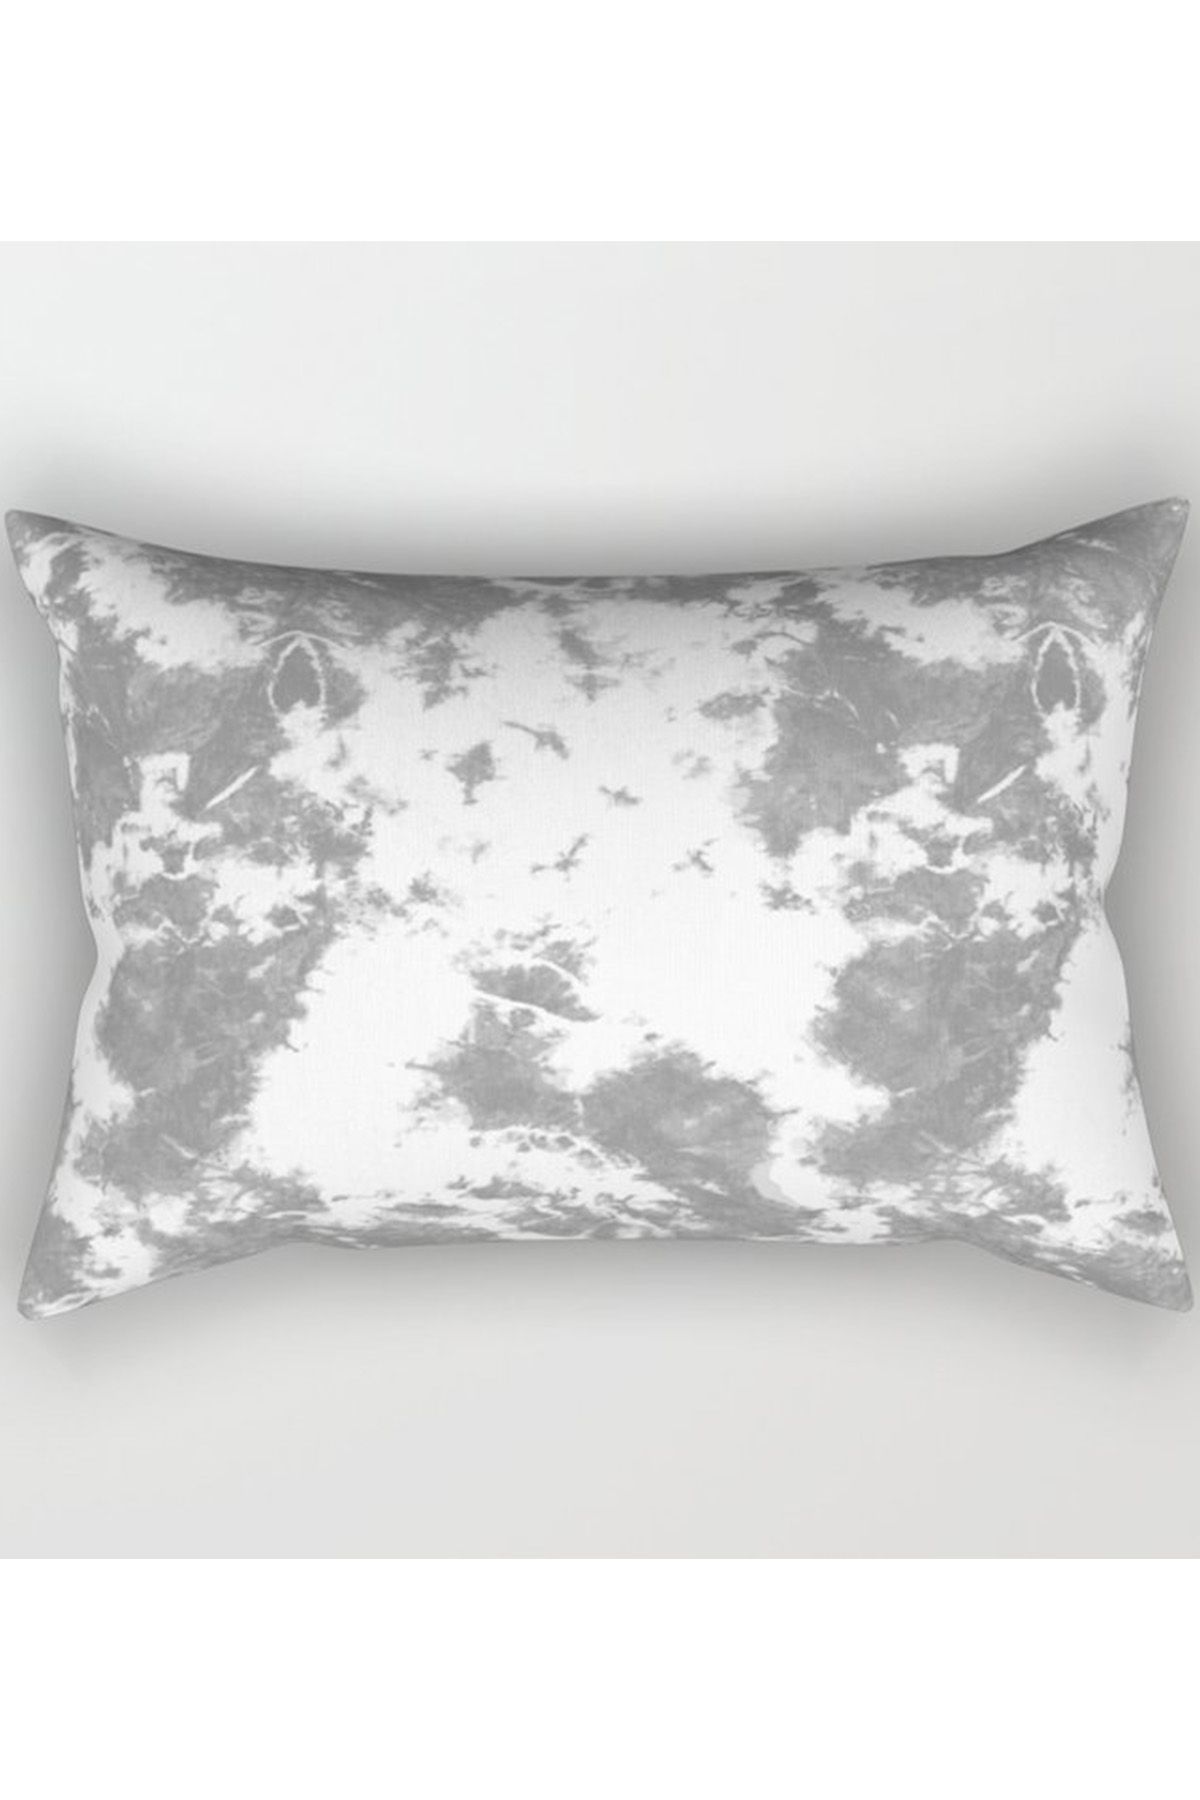 Soft Gray Tie-Dye Rectangular Pillow